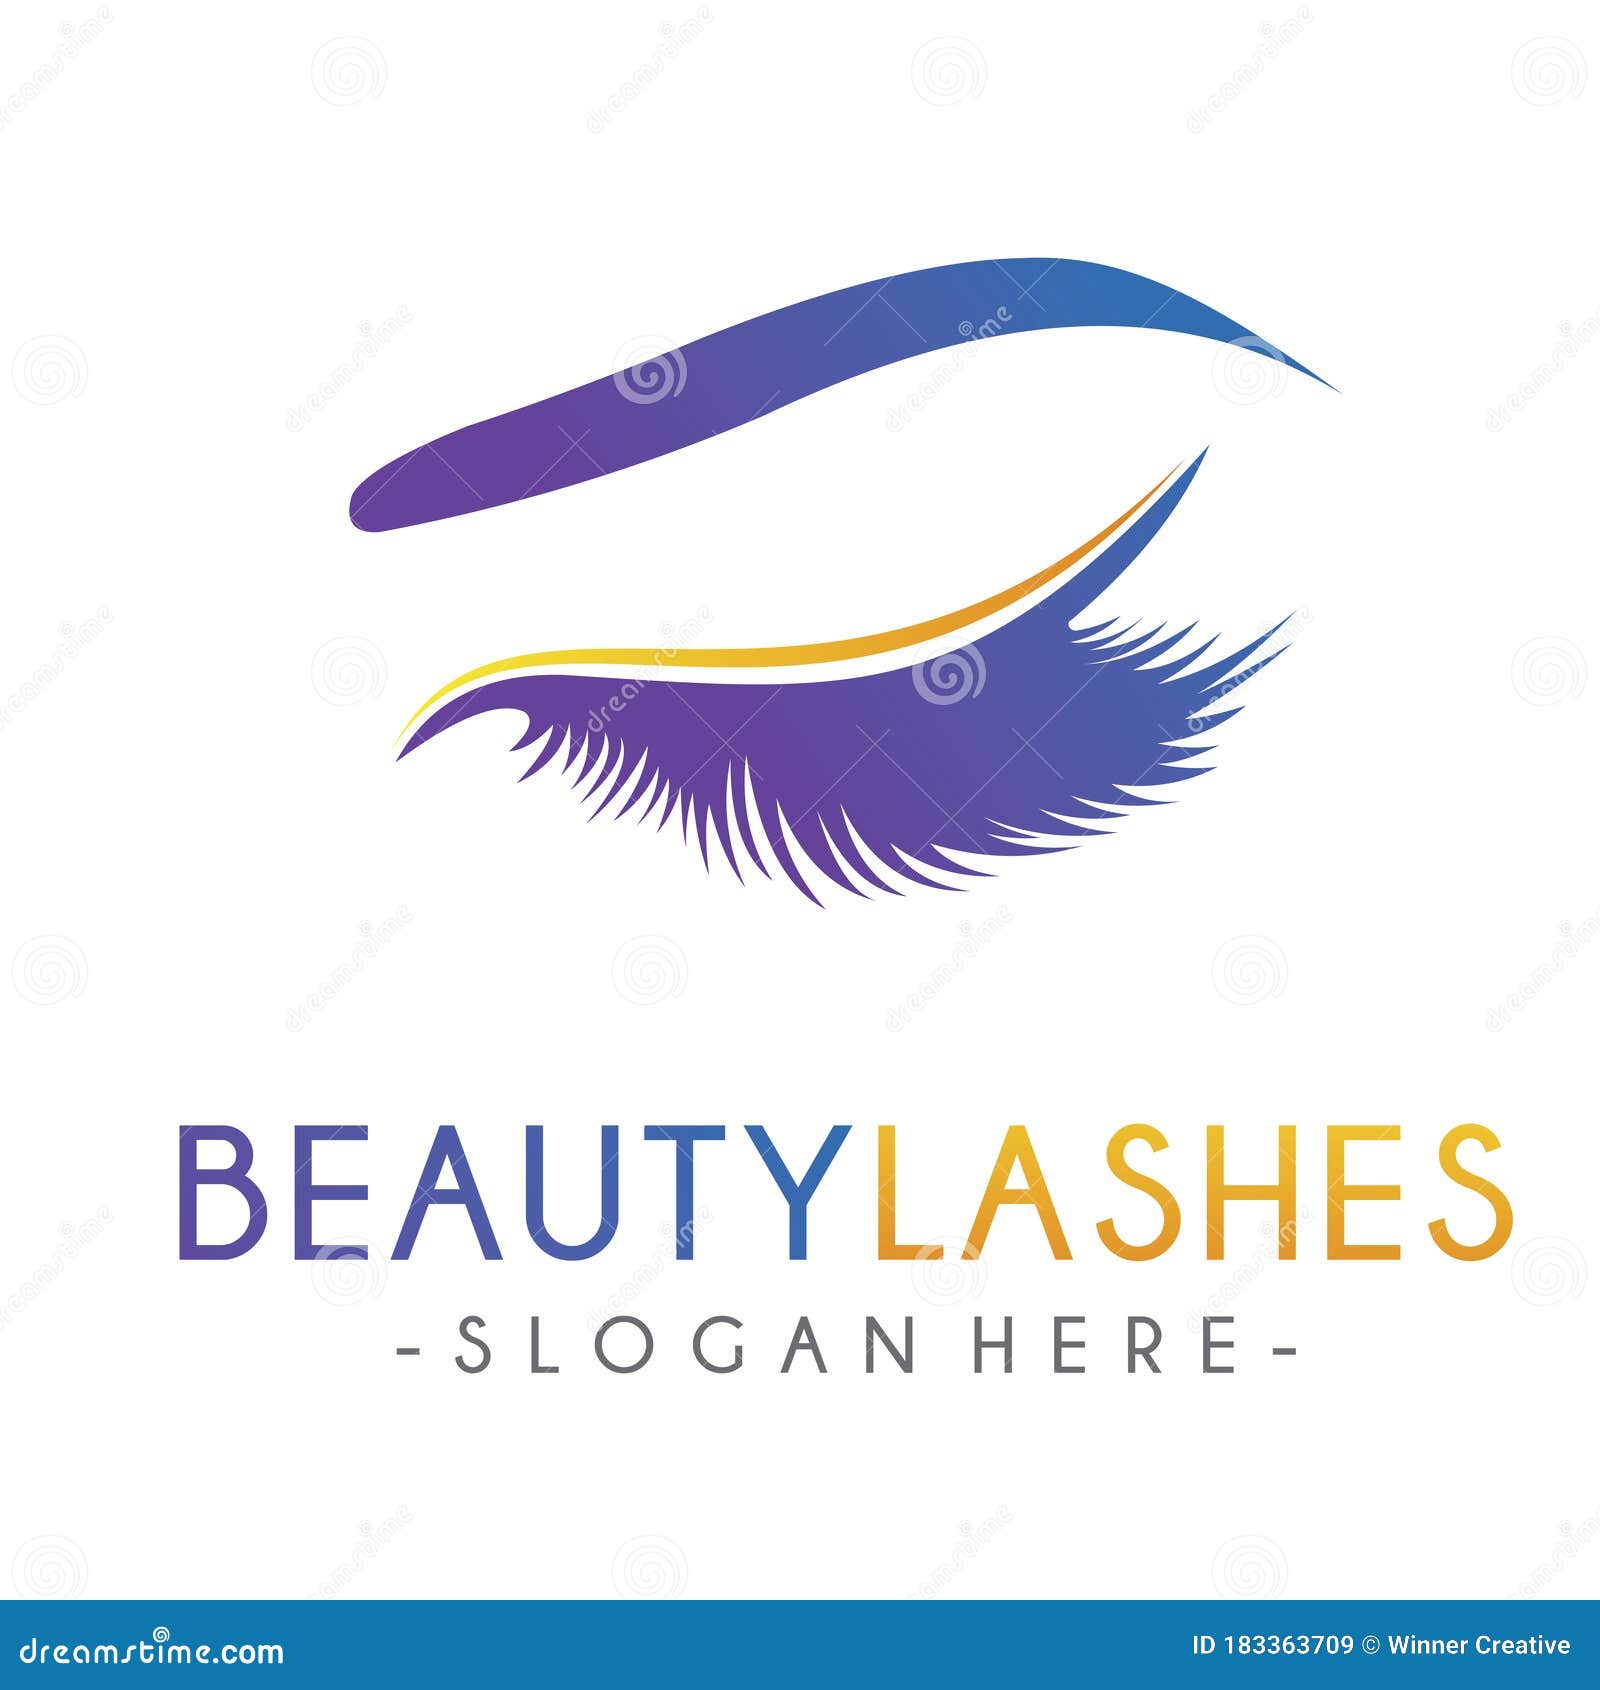 Stationery brow logo eyelashes logo lash logo design makeup logo makeup ...